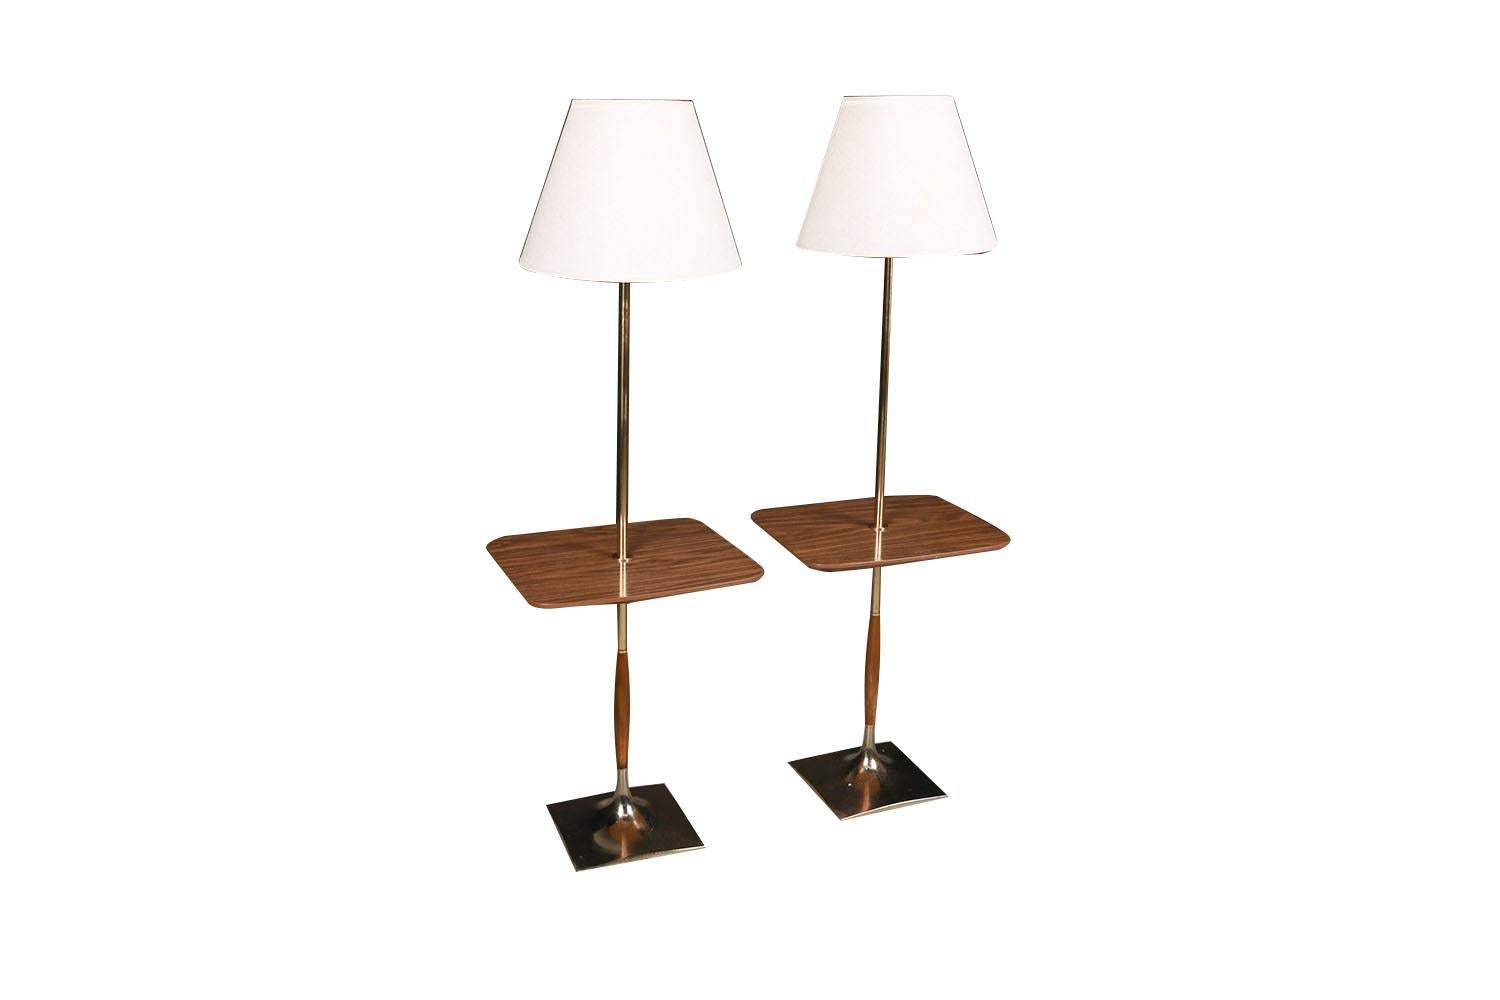 Magnifique paire de lampadaires de table en noyer et laiton, datant des années 1960, de Laurel Lamp Mfg Co, MCM. L'exécution exquise comprend des diffuseurs en verre et des abat-jours blancs. Chacune d'entre elles est équipée d'une table